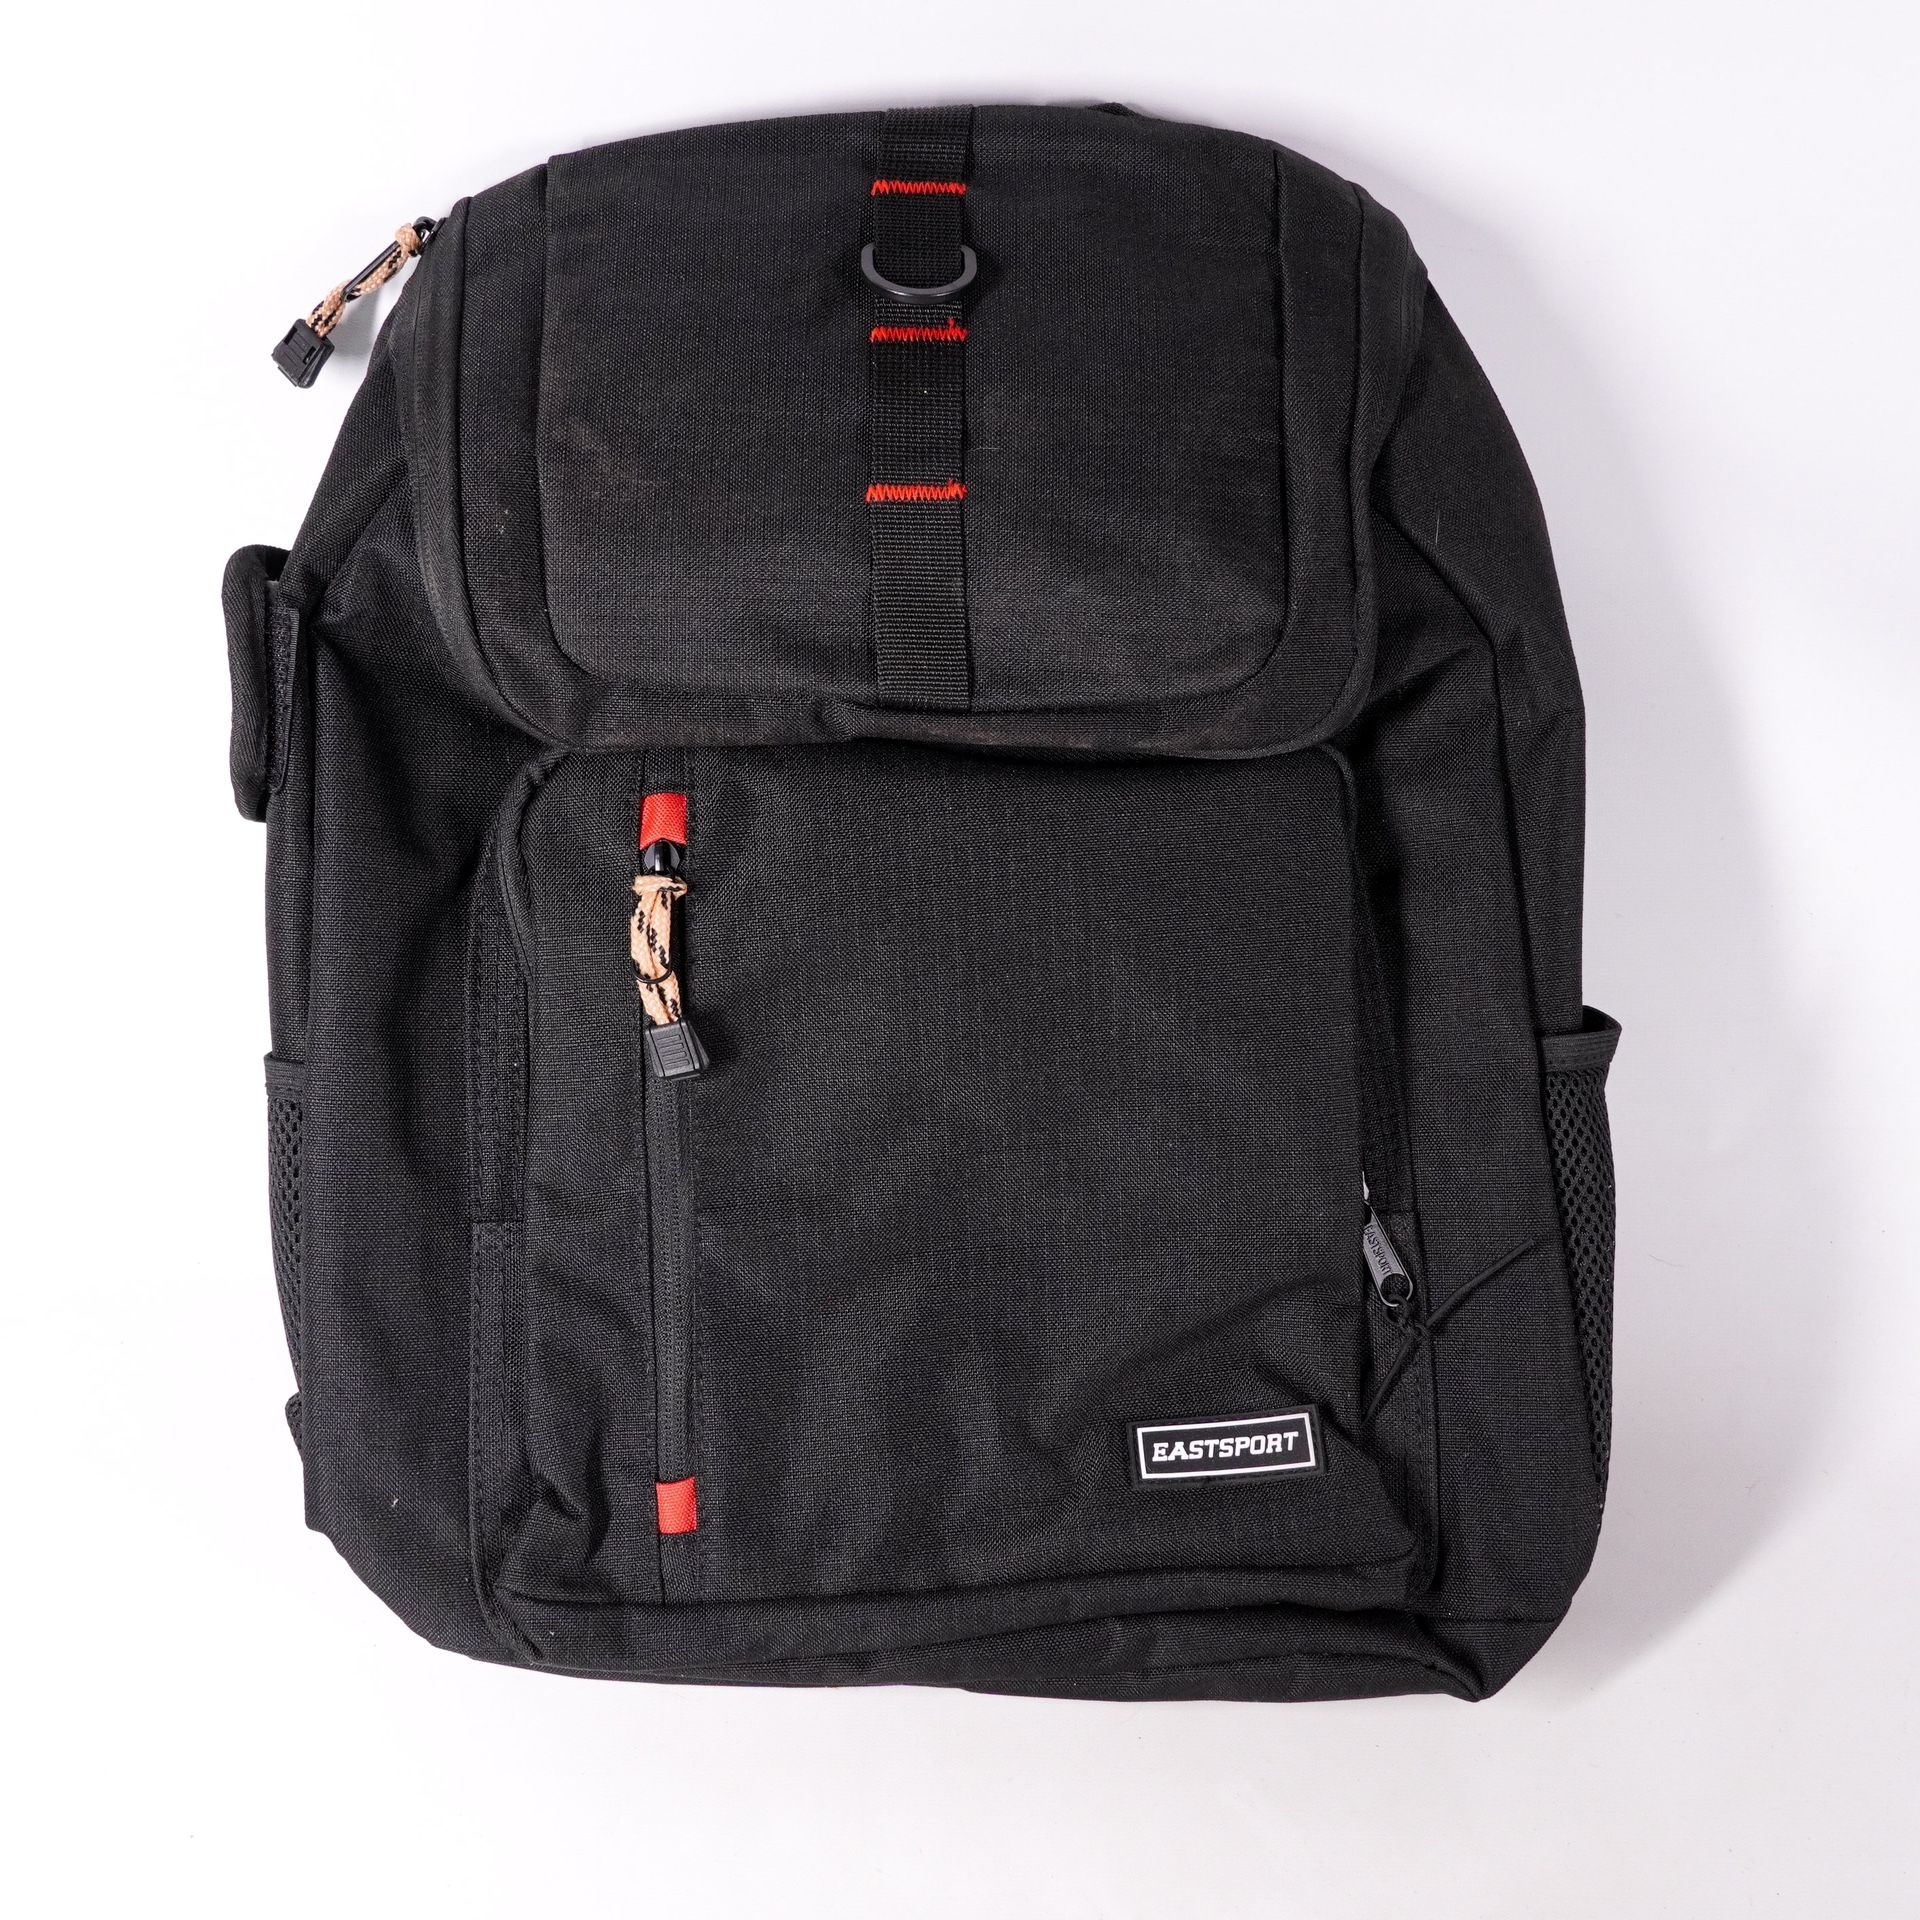 18" Eastsport Black Backpack Book Bag